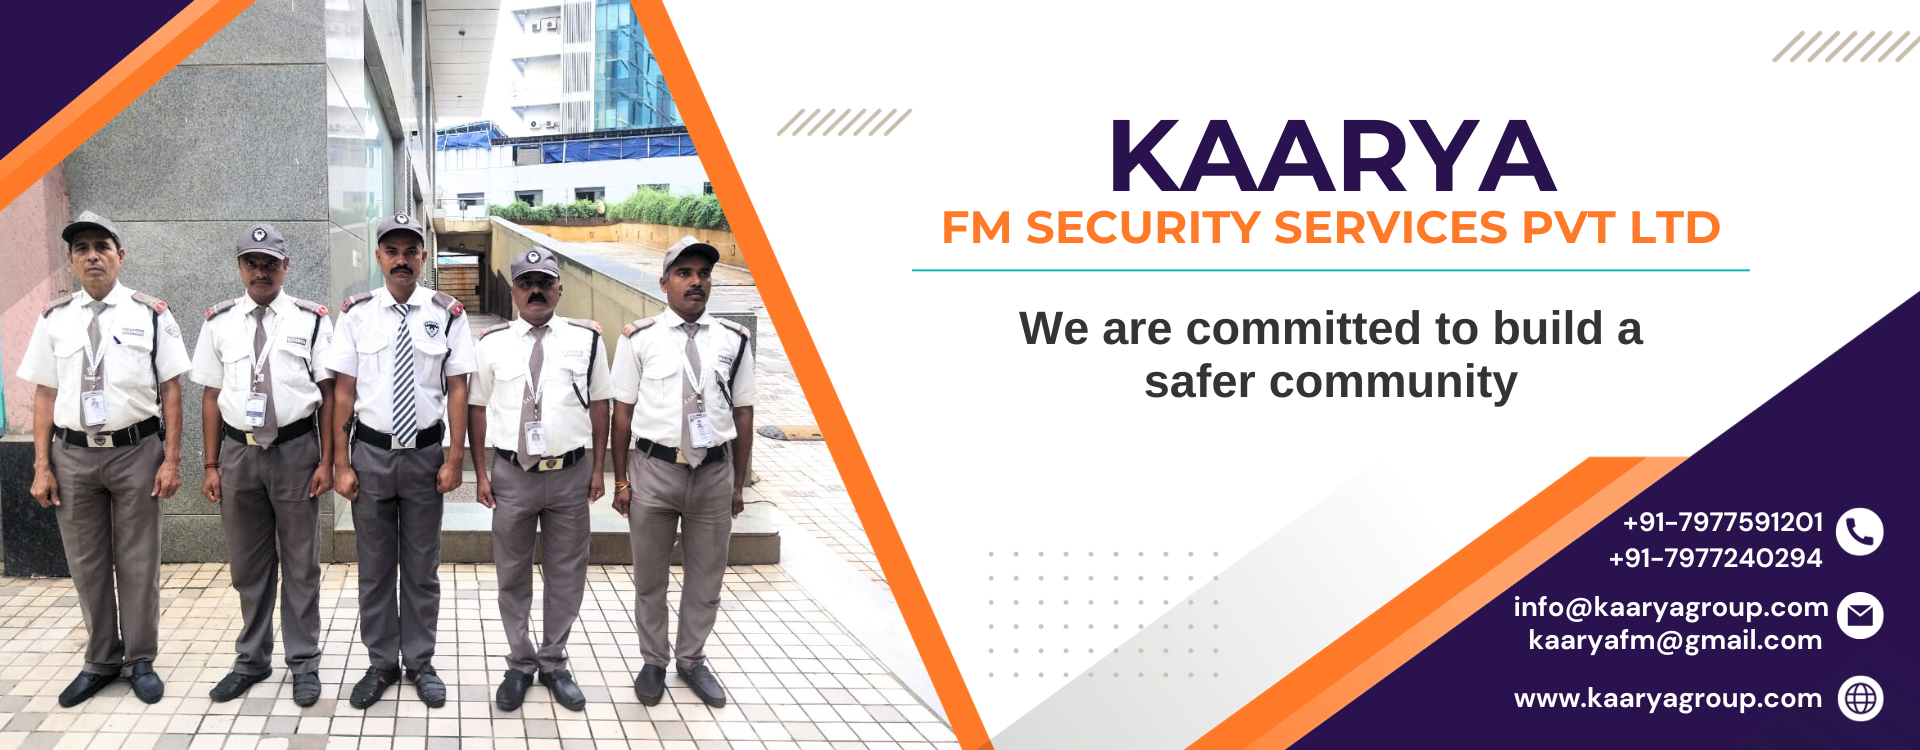 Kaarya FM Security Services Pvt Ltd